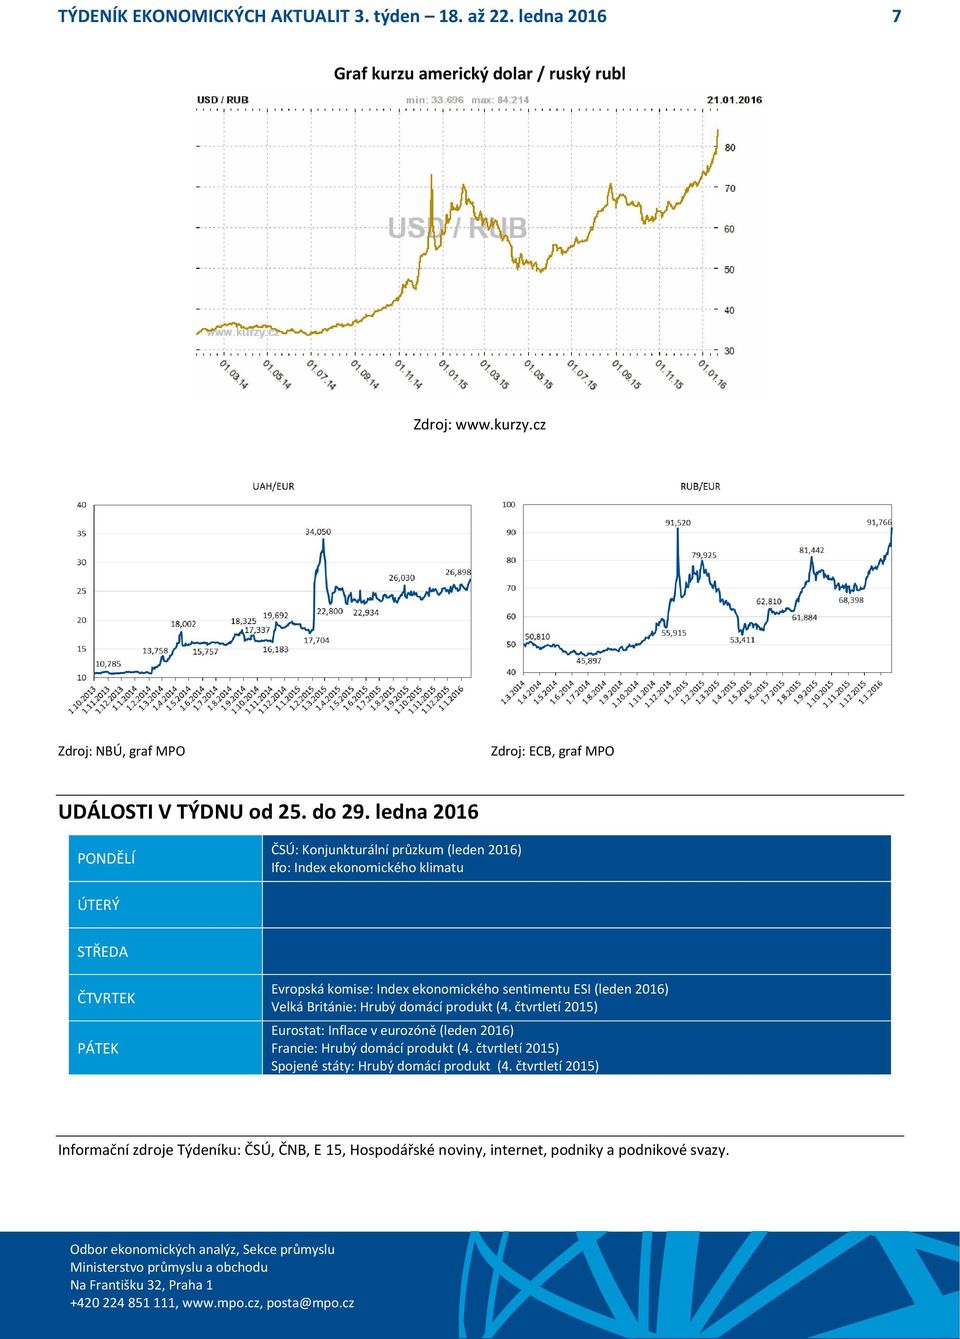 ledna 2016 PONDĚLÍ ČSÚ: Konjunkturální průzkum (leden 2016) Ifo: Index ekonomického klimatu ÚTERÝ STŘEDA ČTVRTEK PÁTEK Evropská komise: Index ekonomického sentimentu ESI